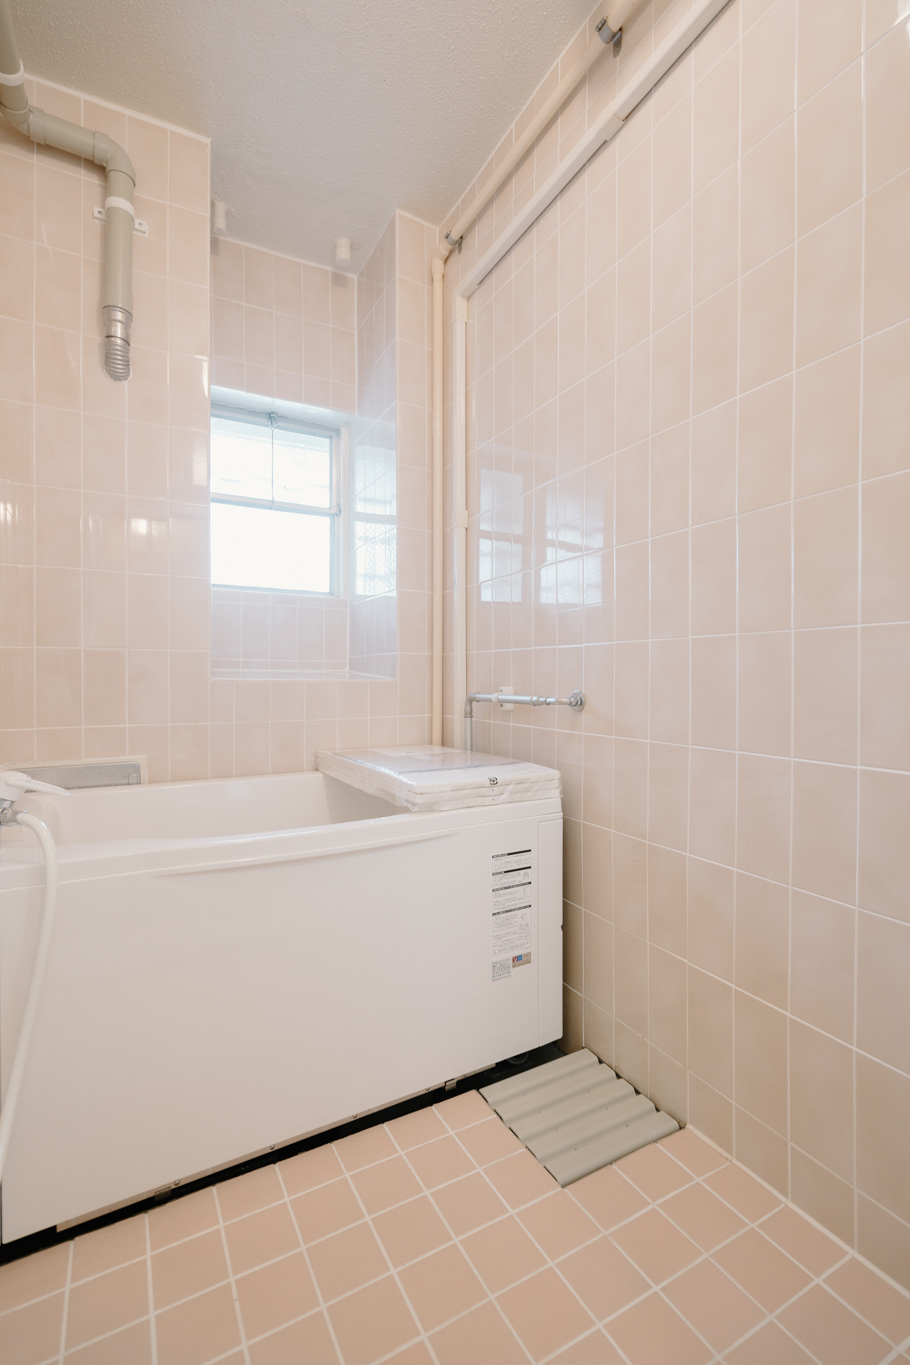 お風呂はタイル張りの在来浴室と言われるタイプですが、給湯設備や浴槽は新しいものになっていて、追い焚き機能もついています。